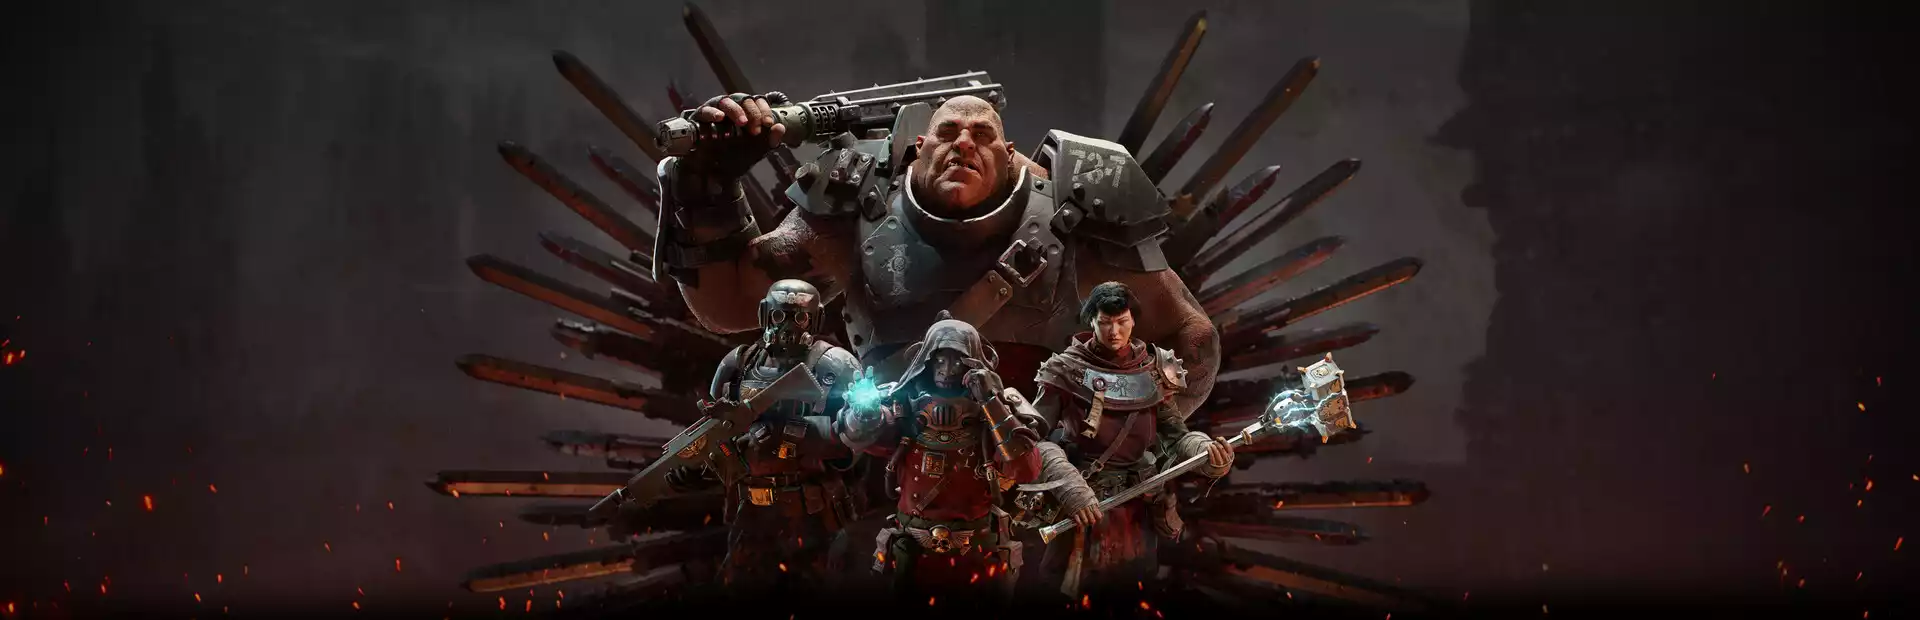 Warhammer 40K: Darktide Steam Key China